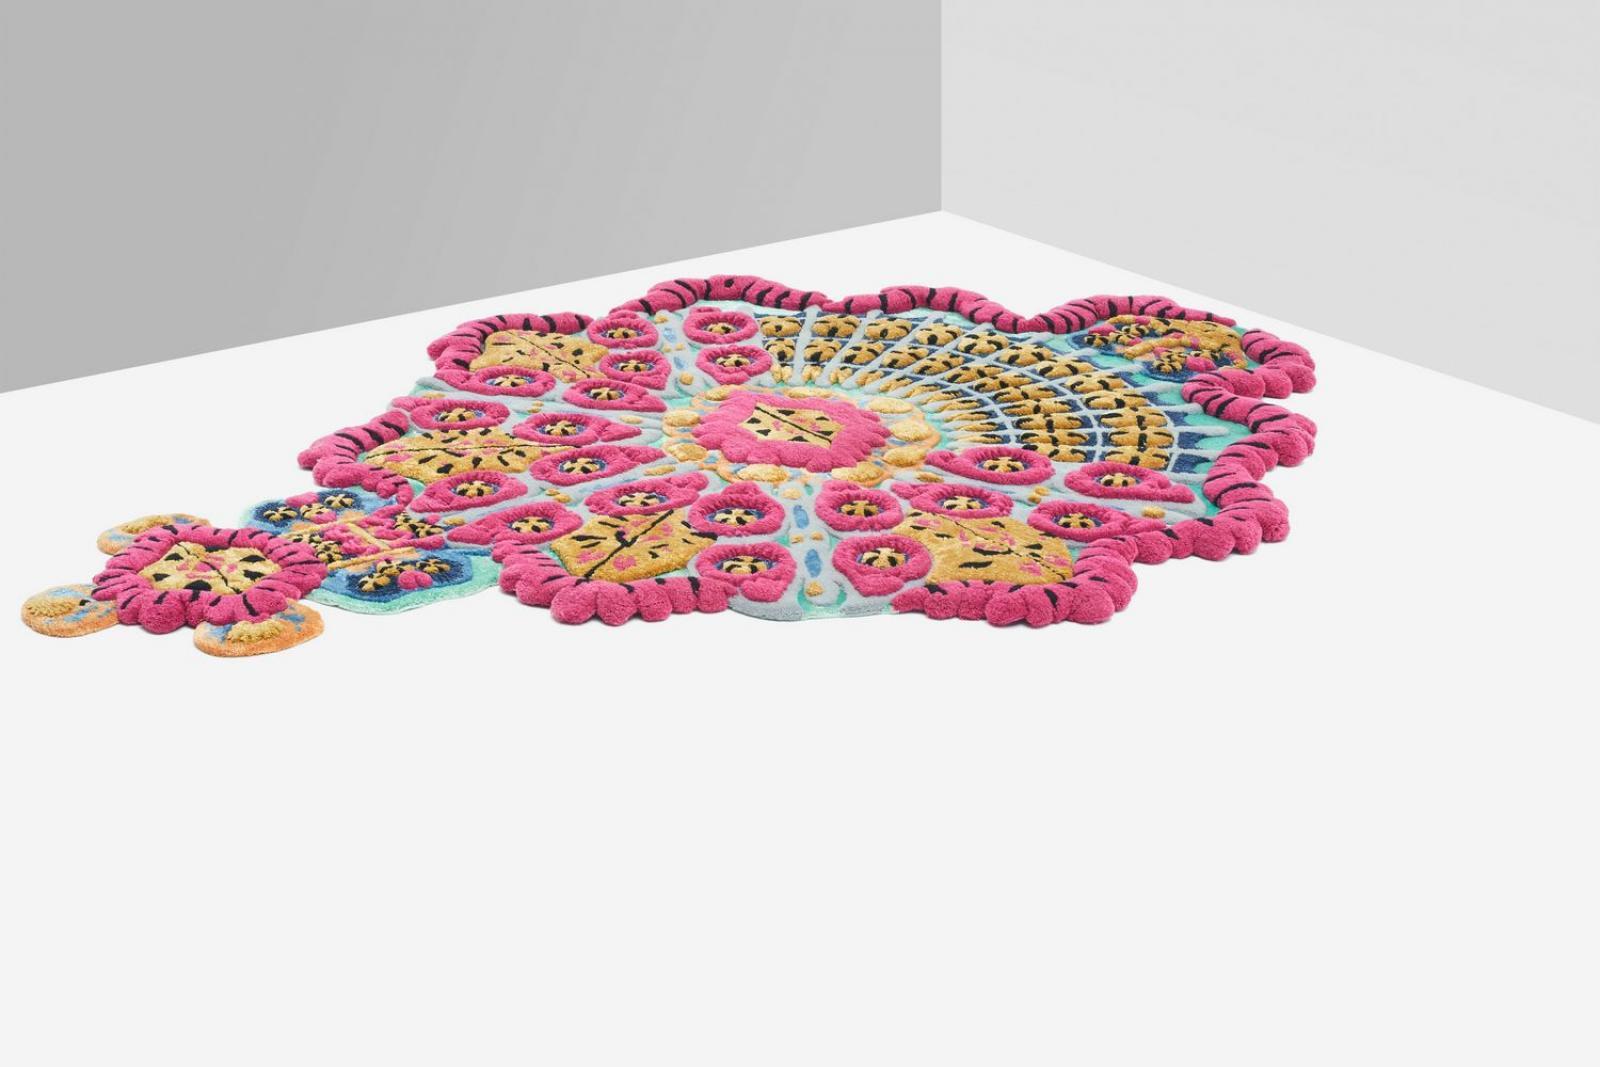 Mit seiner einzigartigen Silhouette und der großartigen Verwendung von Farben ist dieser Teppich, der 2017 von Campana Brothers entworfen wurde, eine großartige Ergänzung für eine moderne oder eklektische Einrichtung. Dieser Teppich ist Teil einer